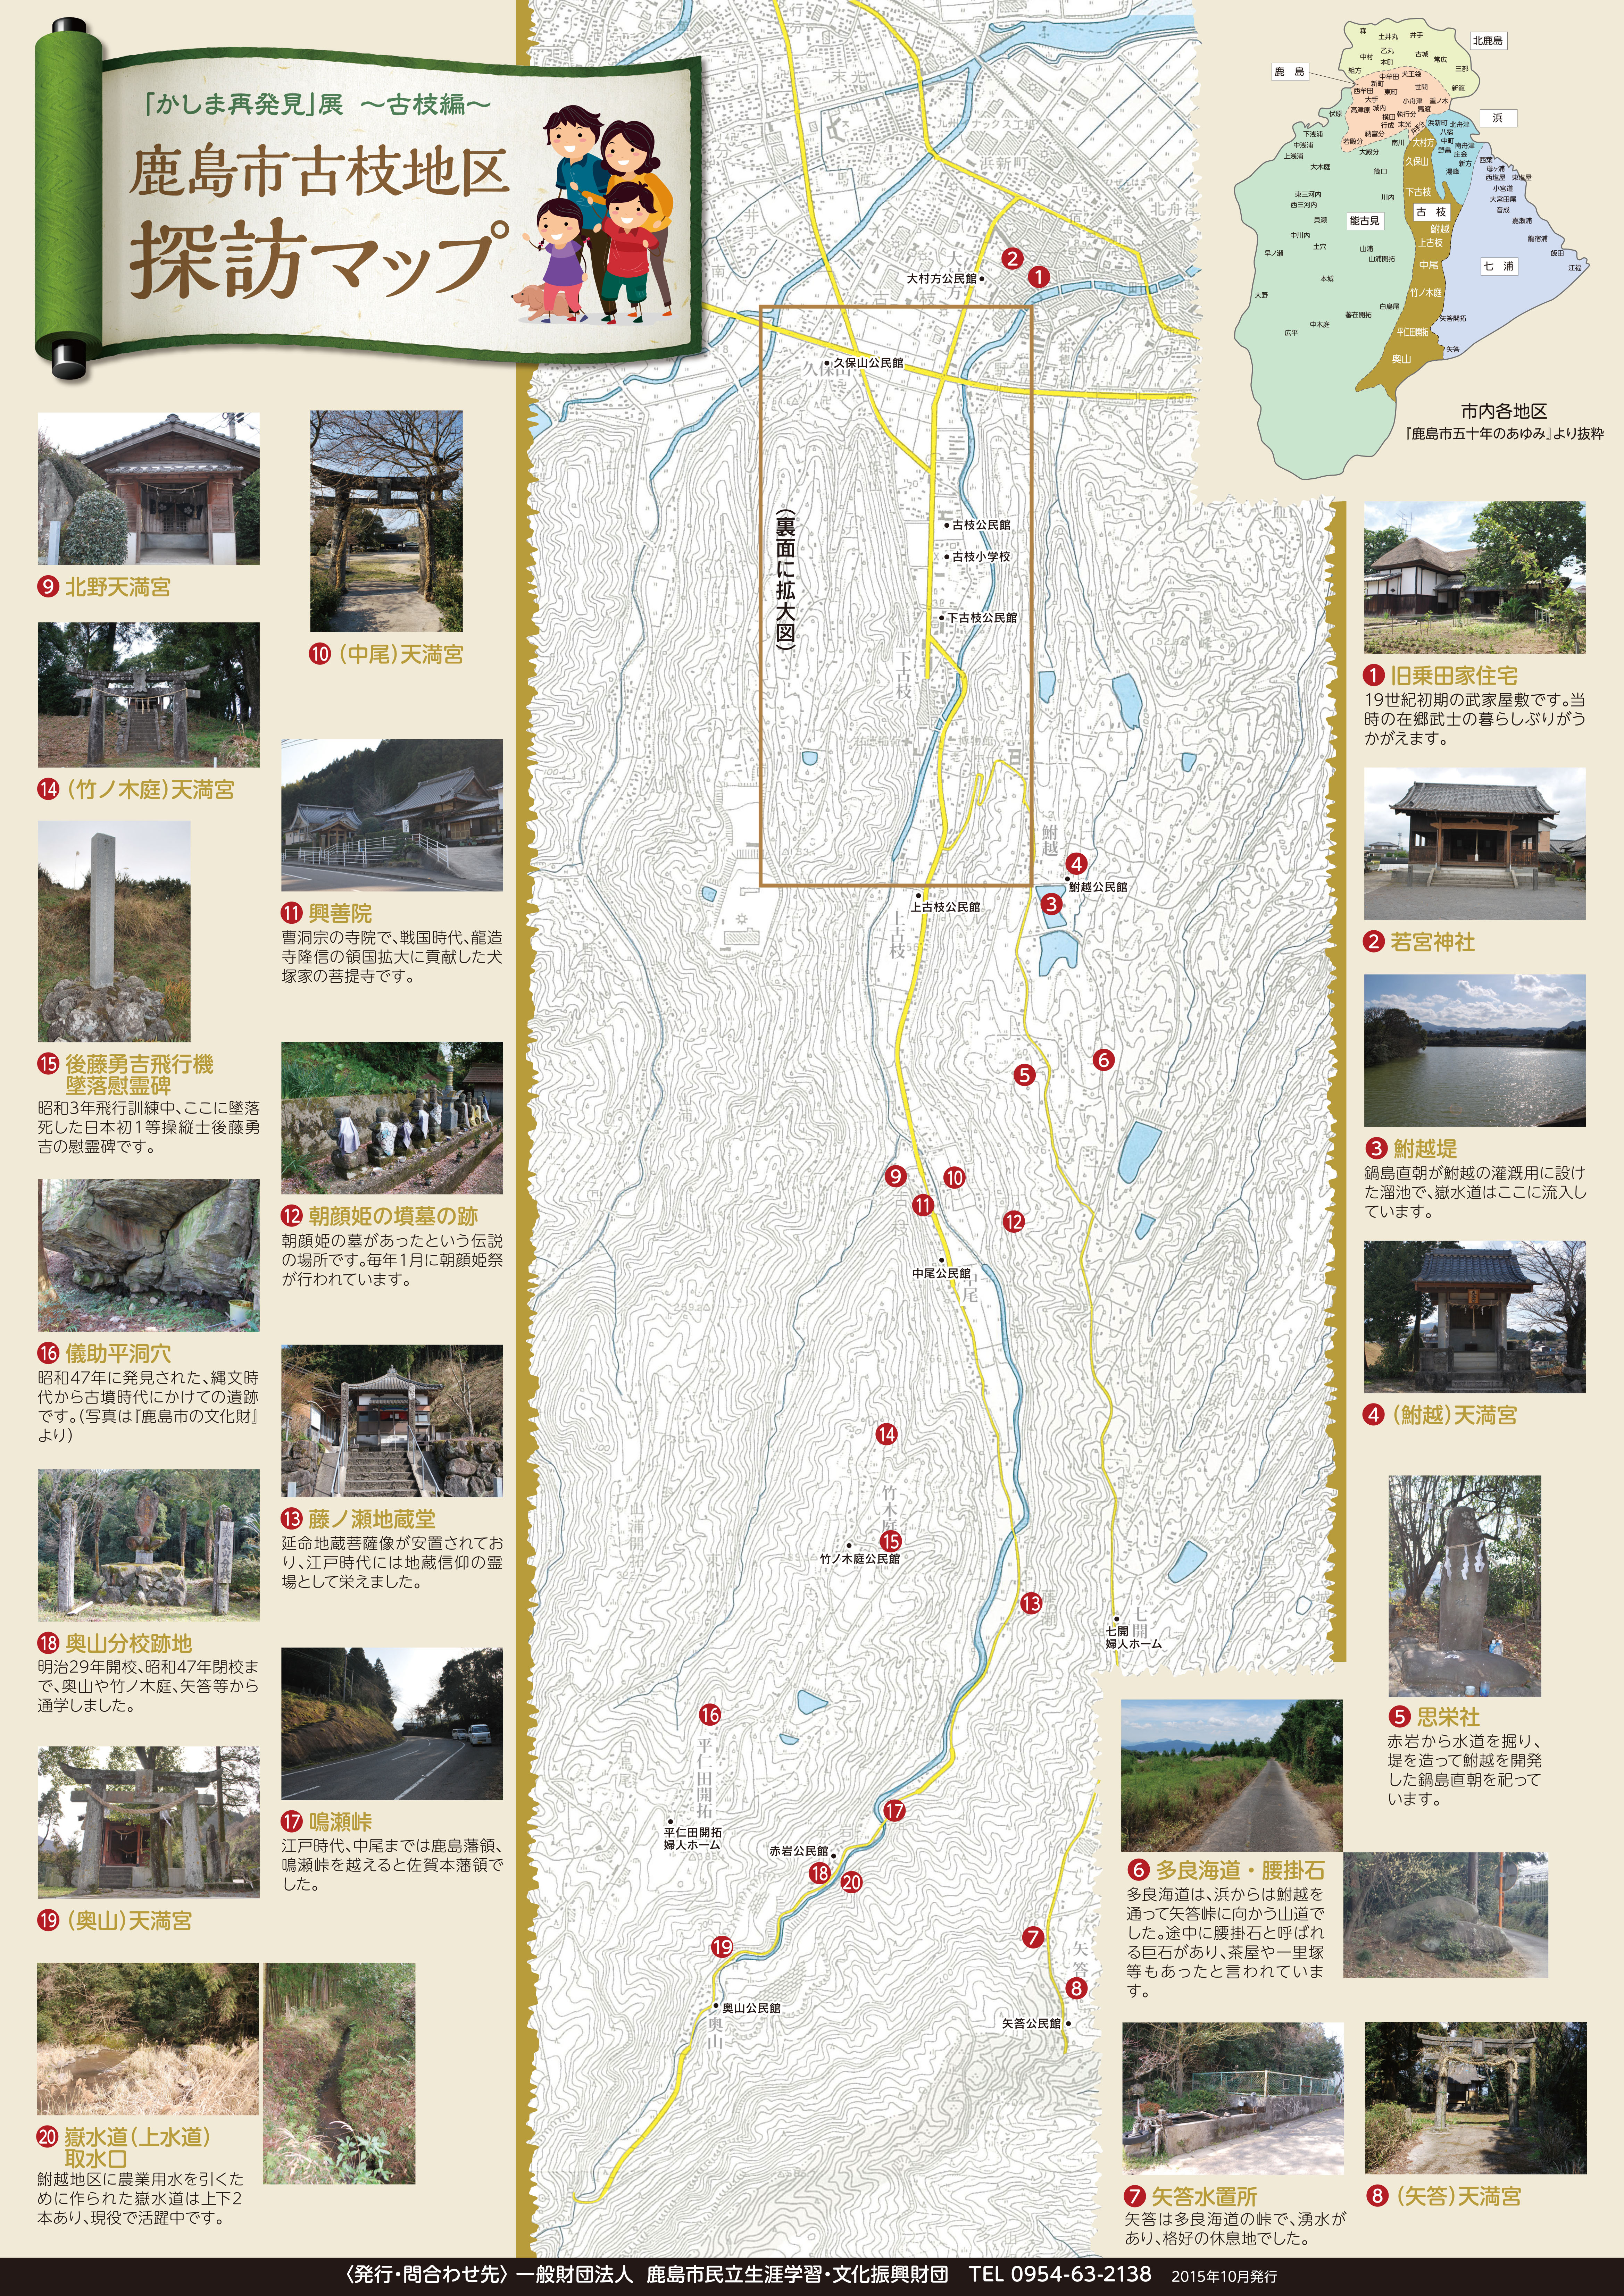 鹿島市 古枝地区 探訪マップ 表 